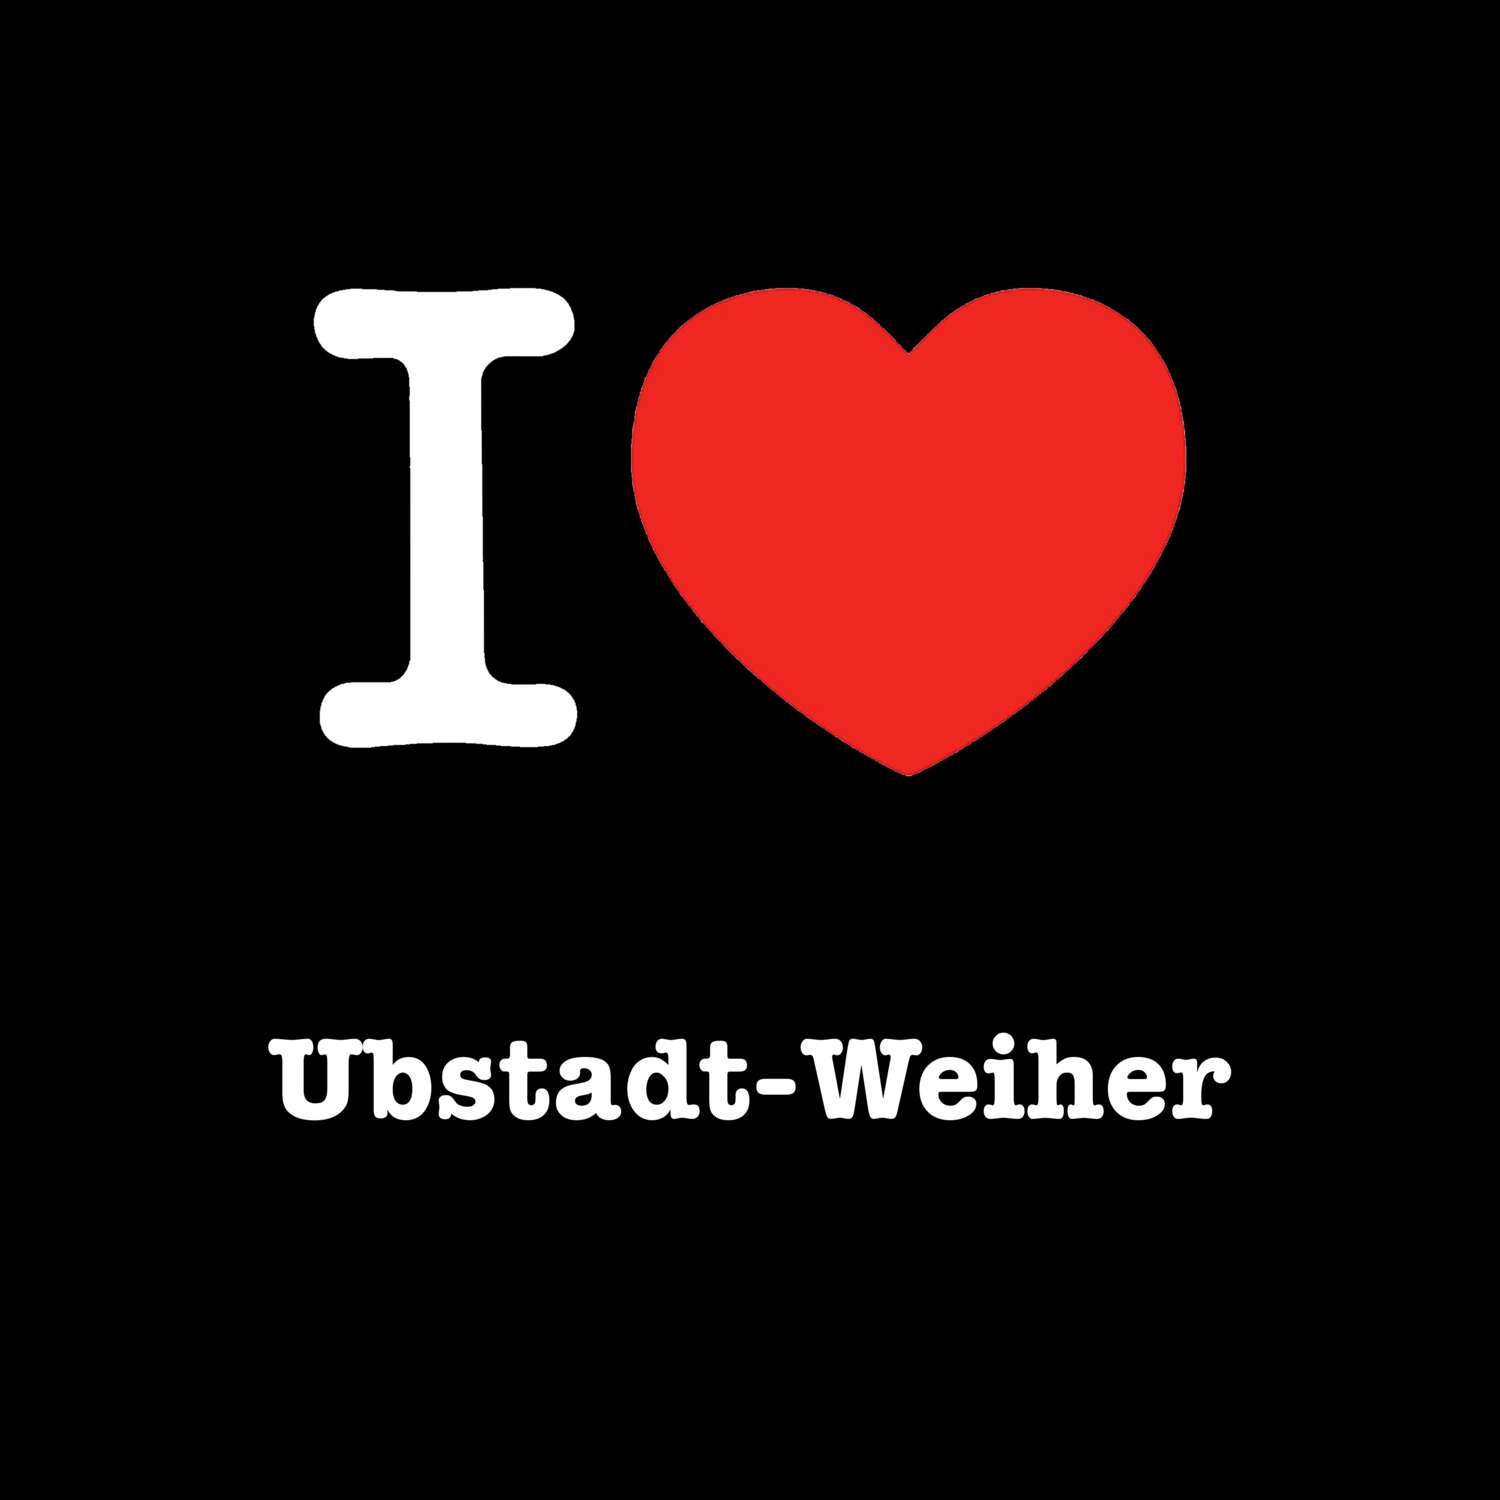 Ubstadt-Weiher T-Shirt »I love«